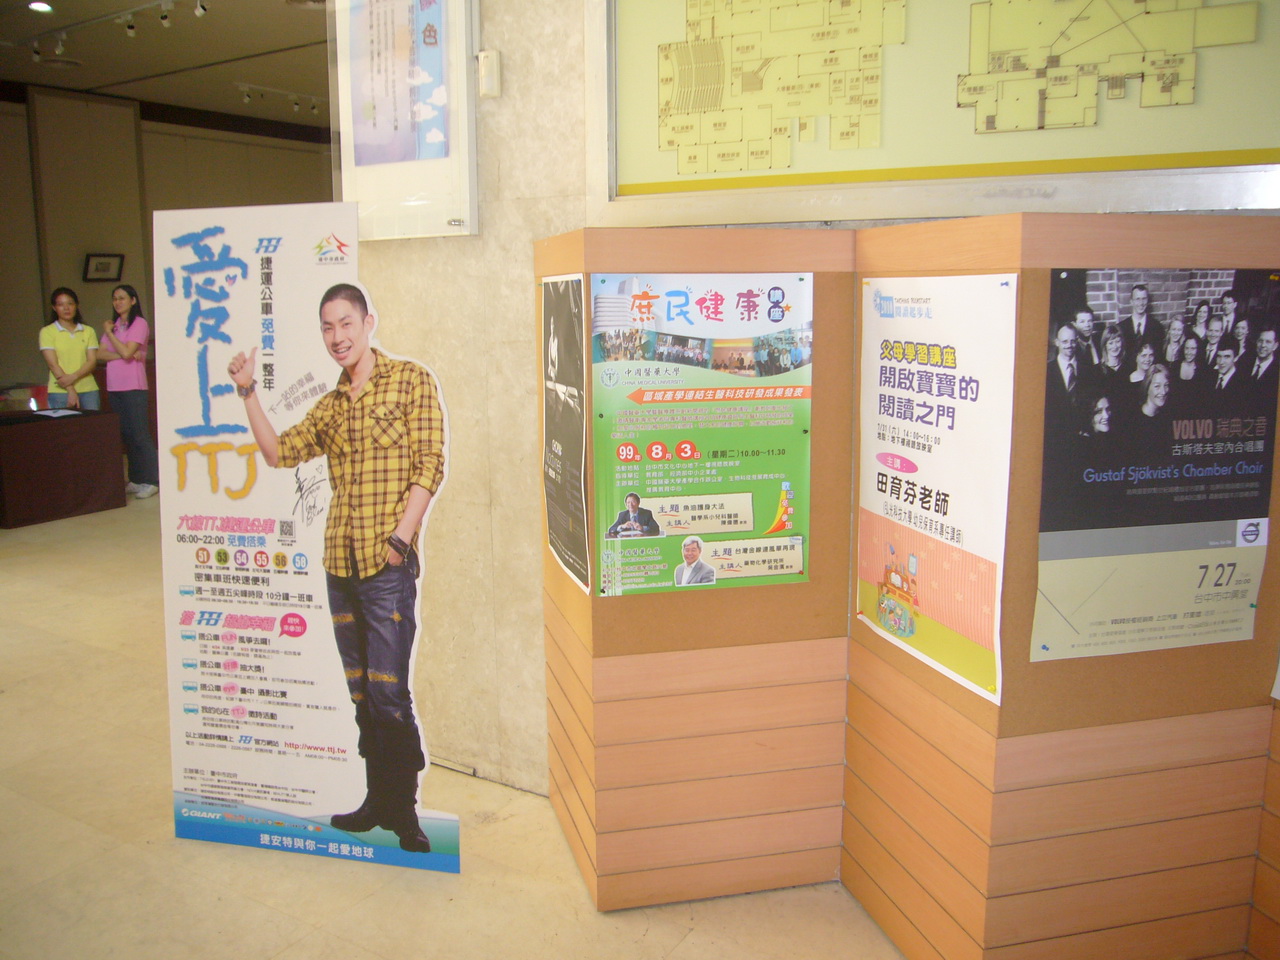 台中市文化中心張貼本校舉辦的庶民健康講座宣傳海報